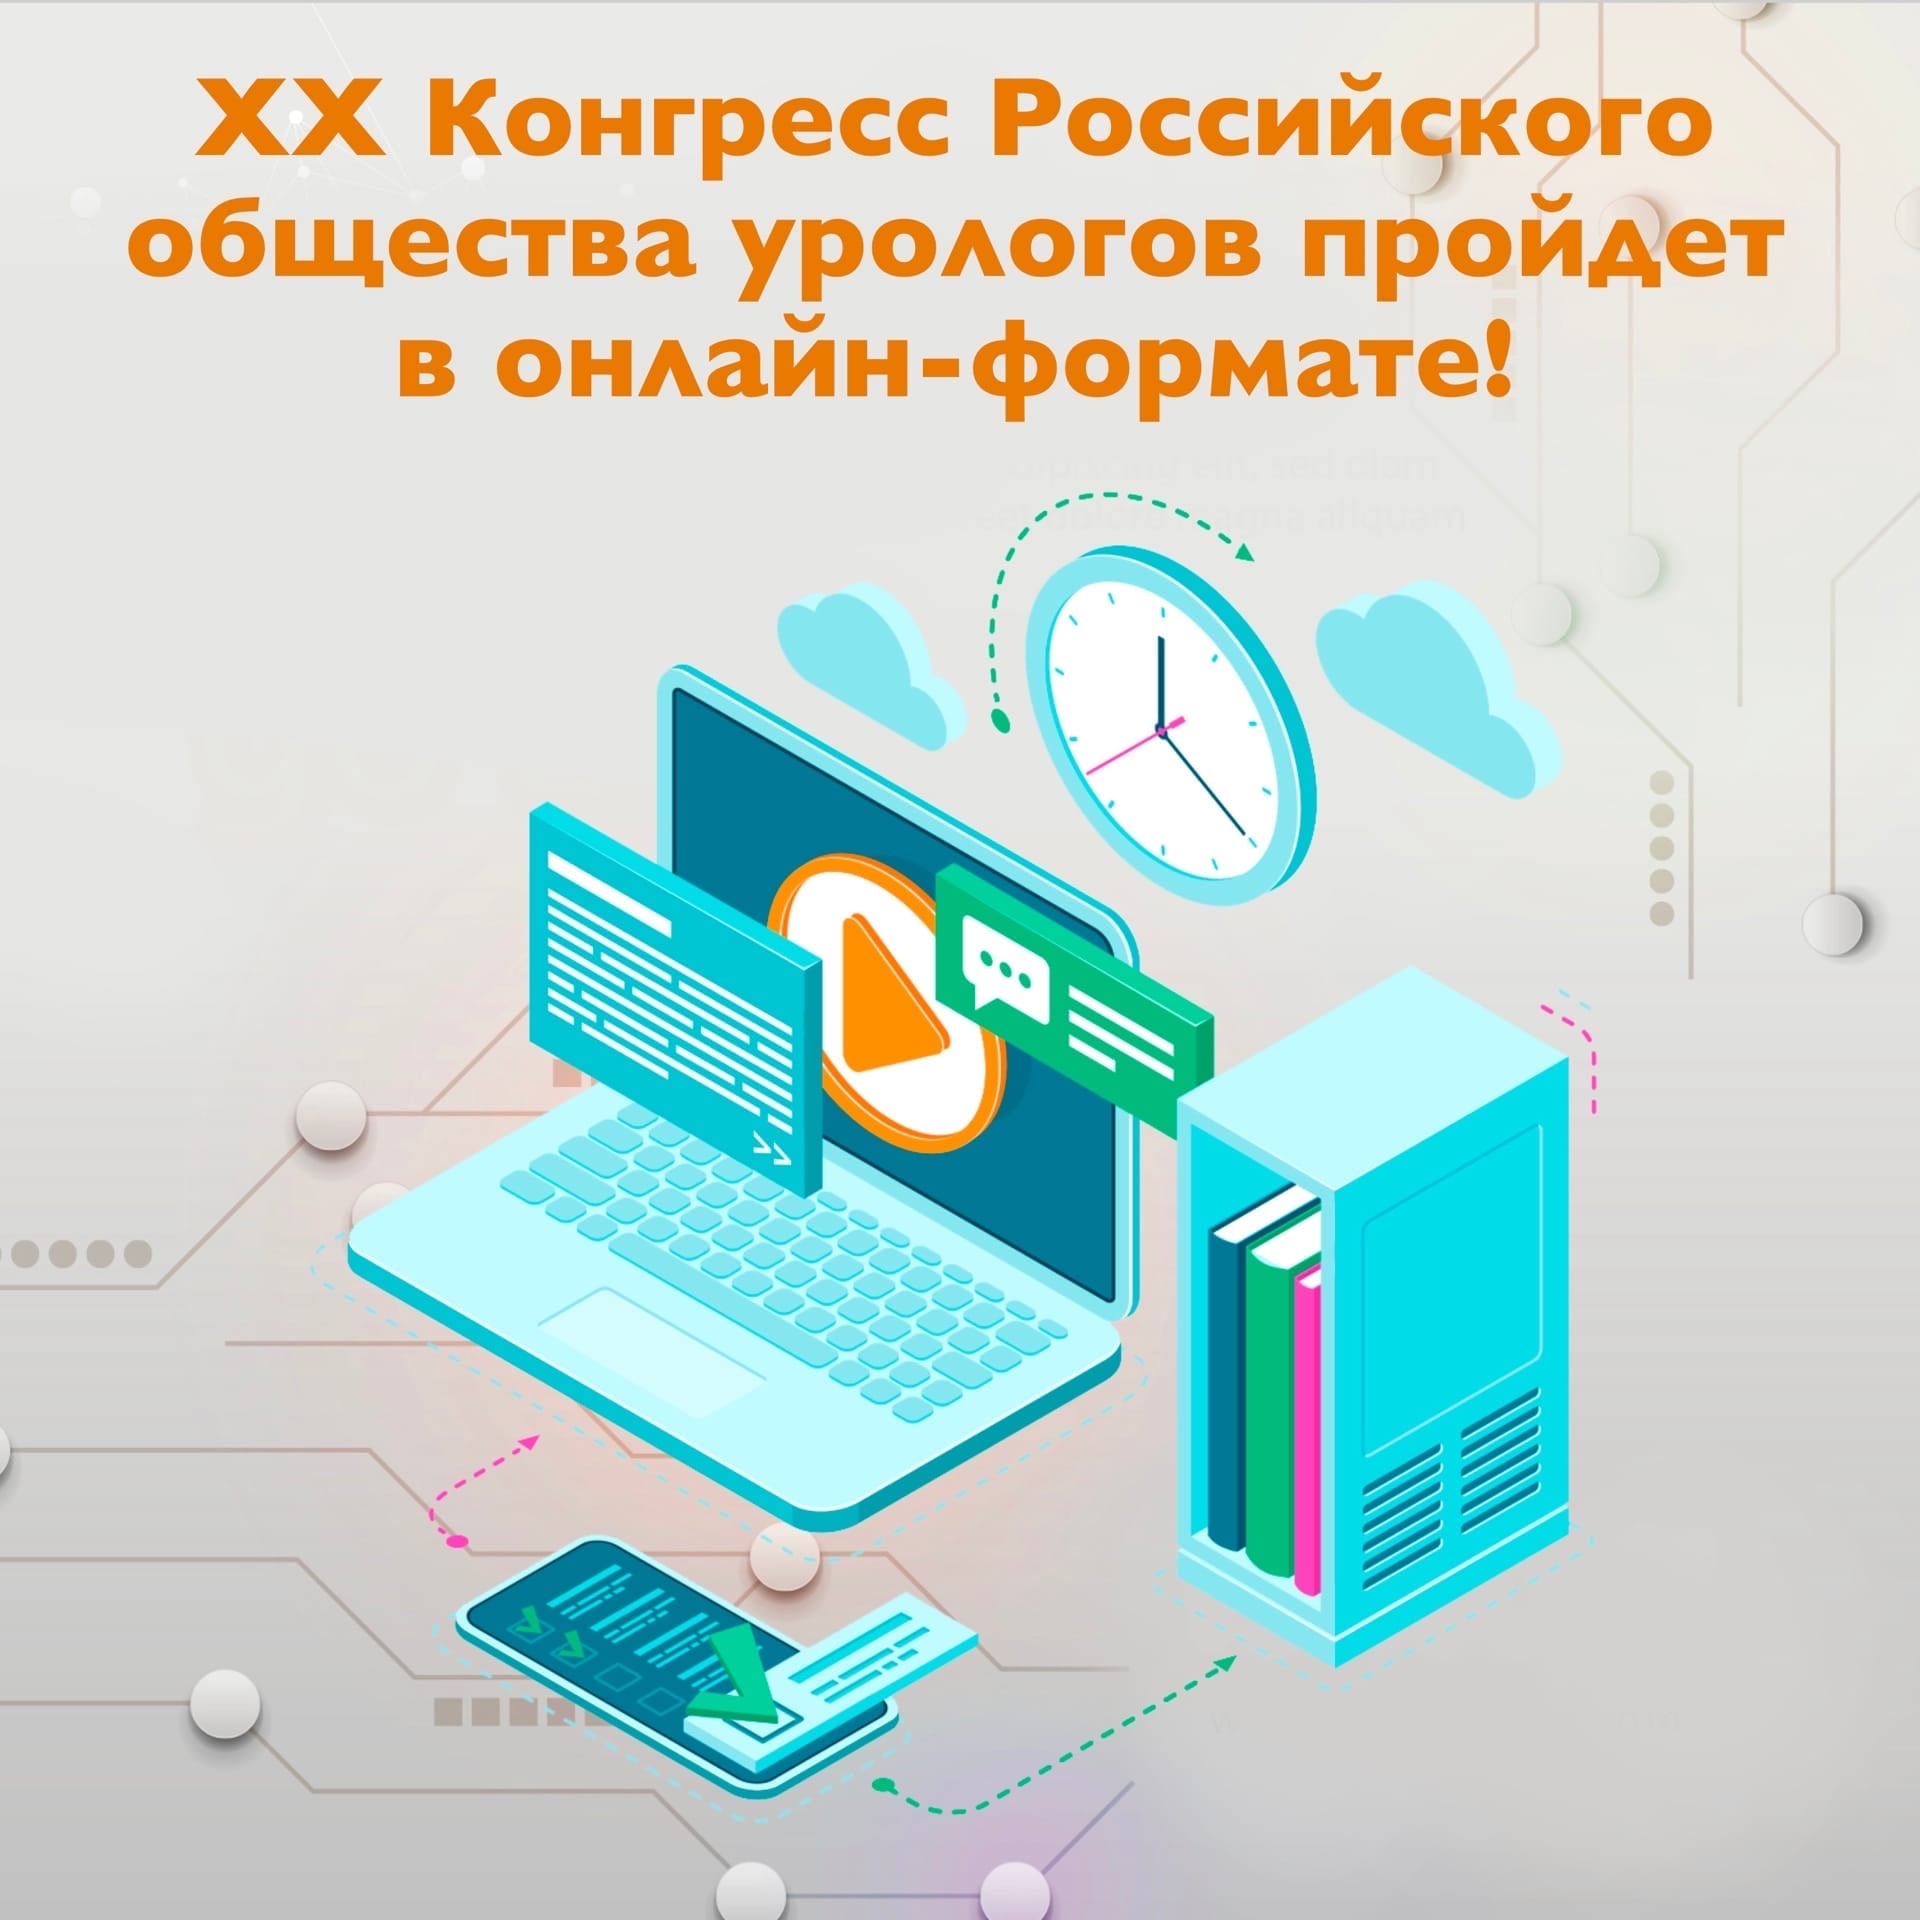 Встреча без ограничений: XX Конгресс Российского общества урологов состоится в онлайн-формате! 